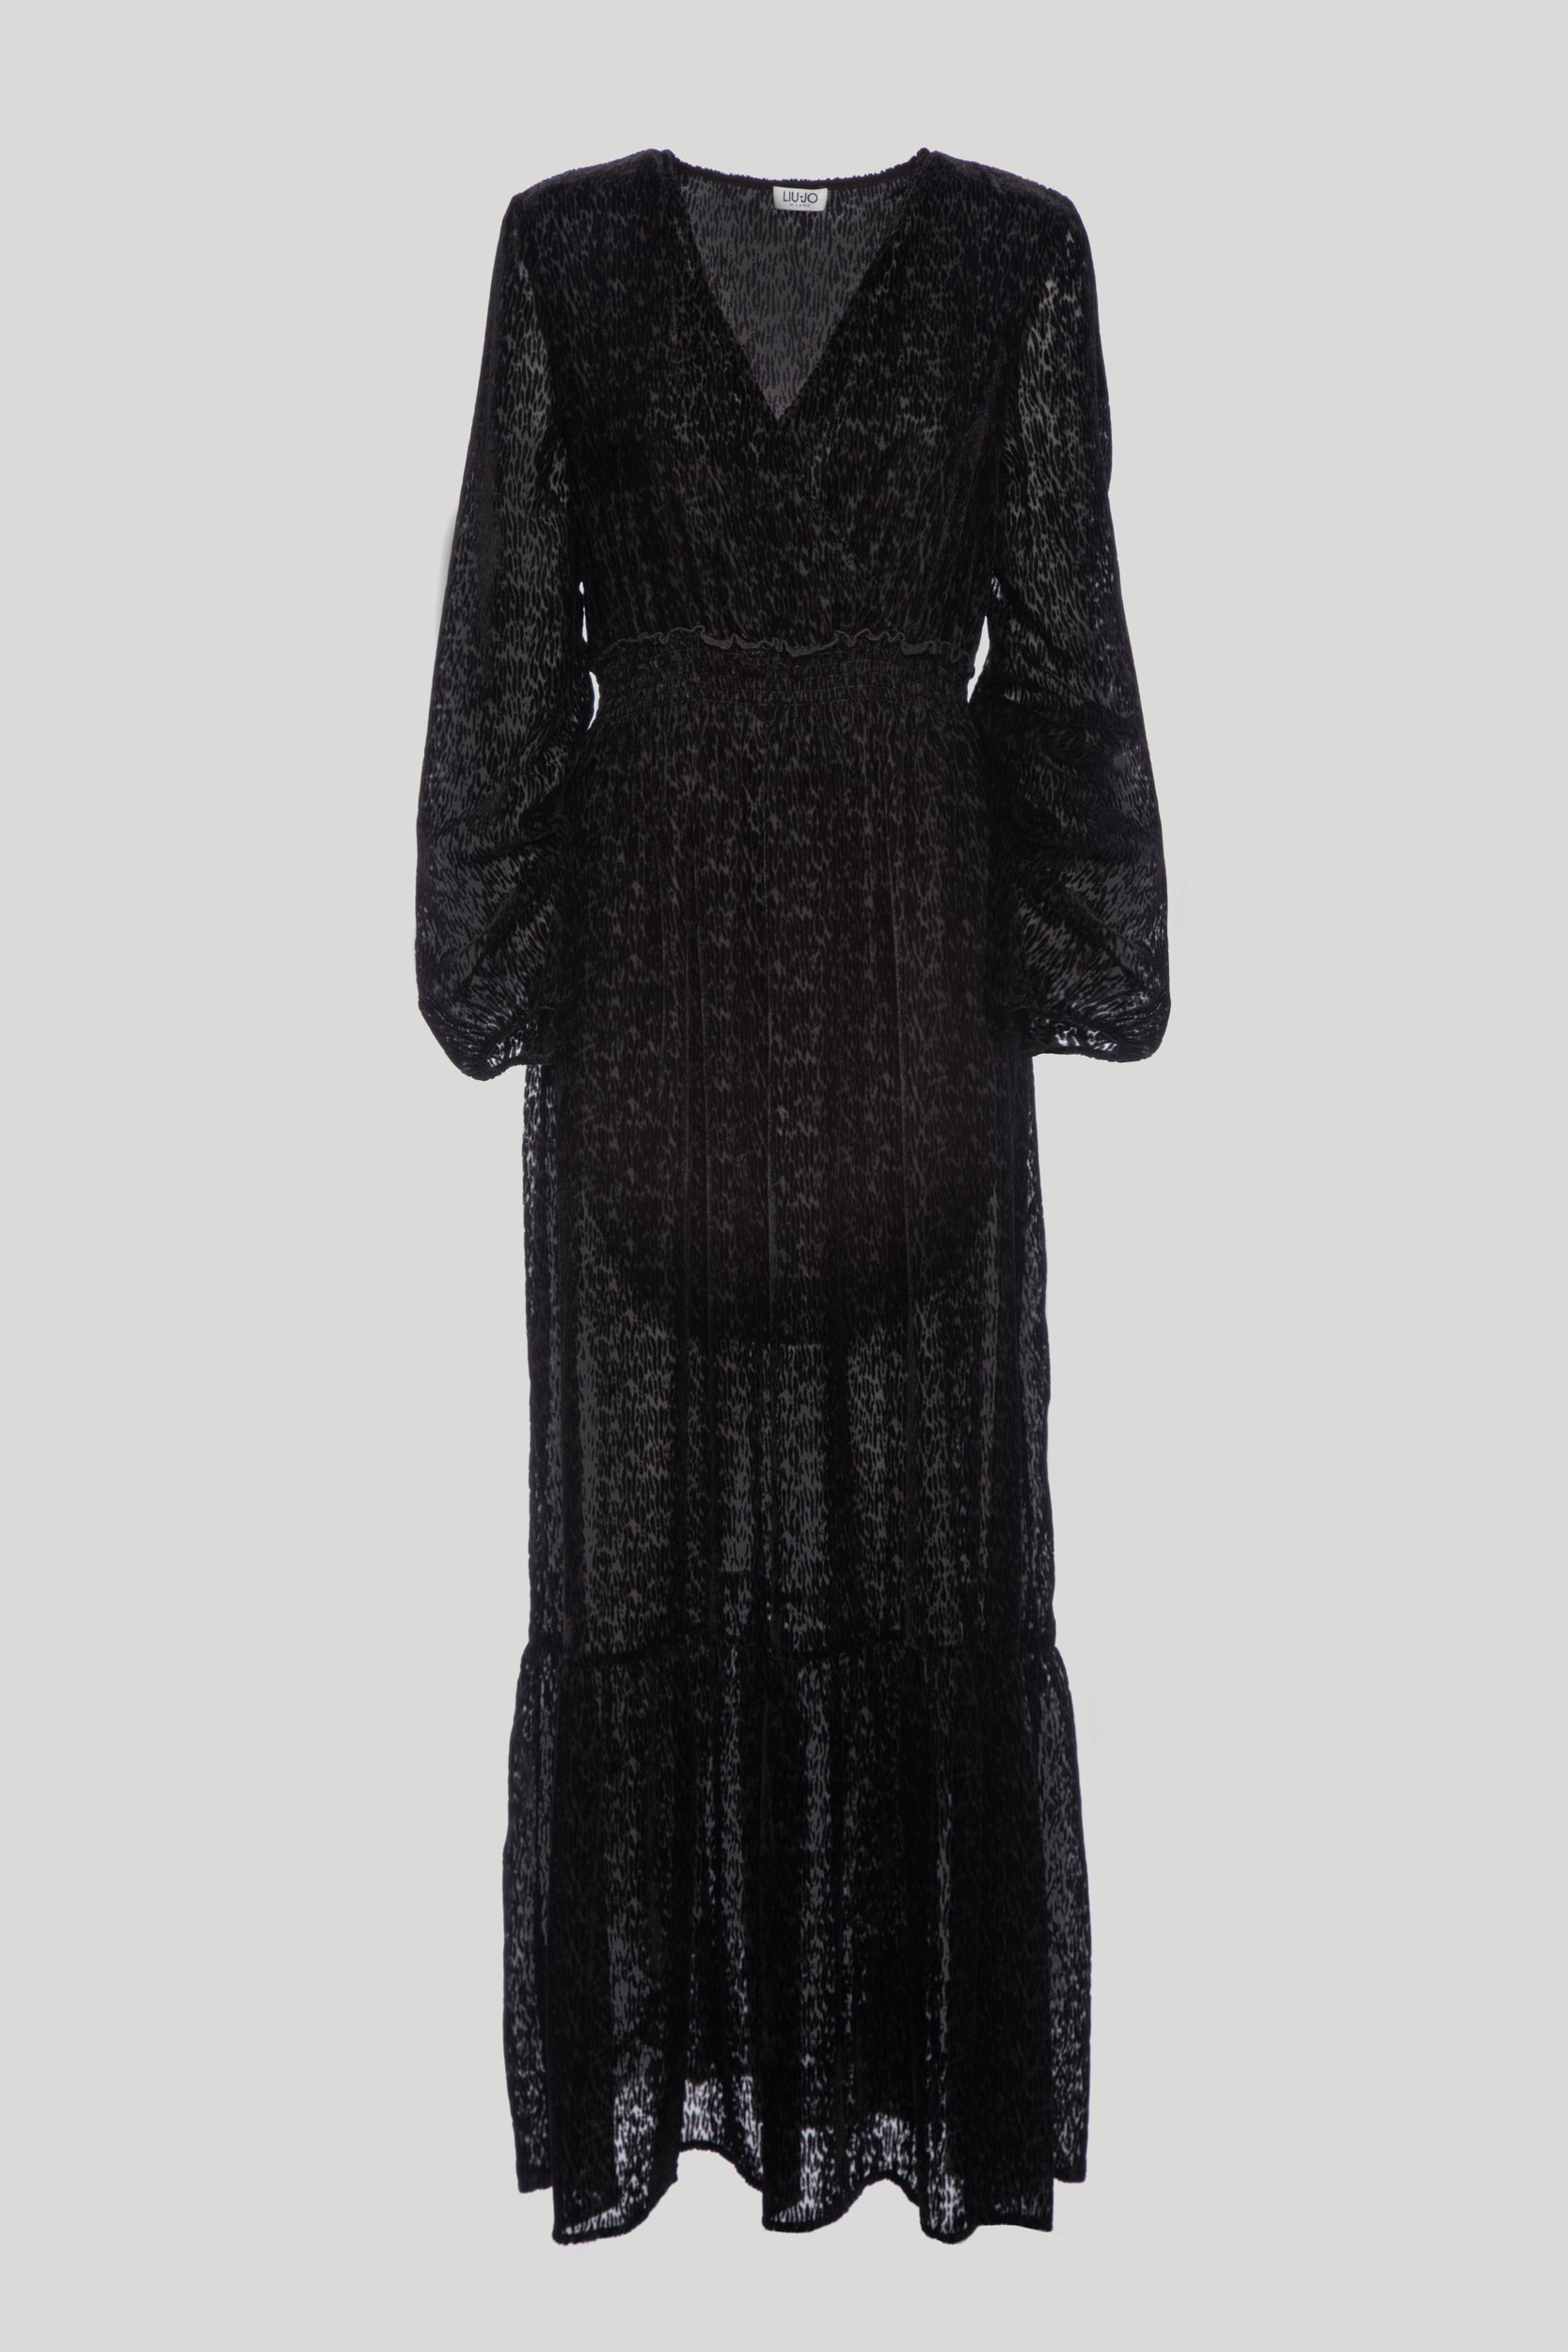 LIU JO Black Velvet Long Dress